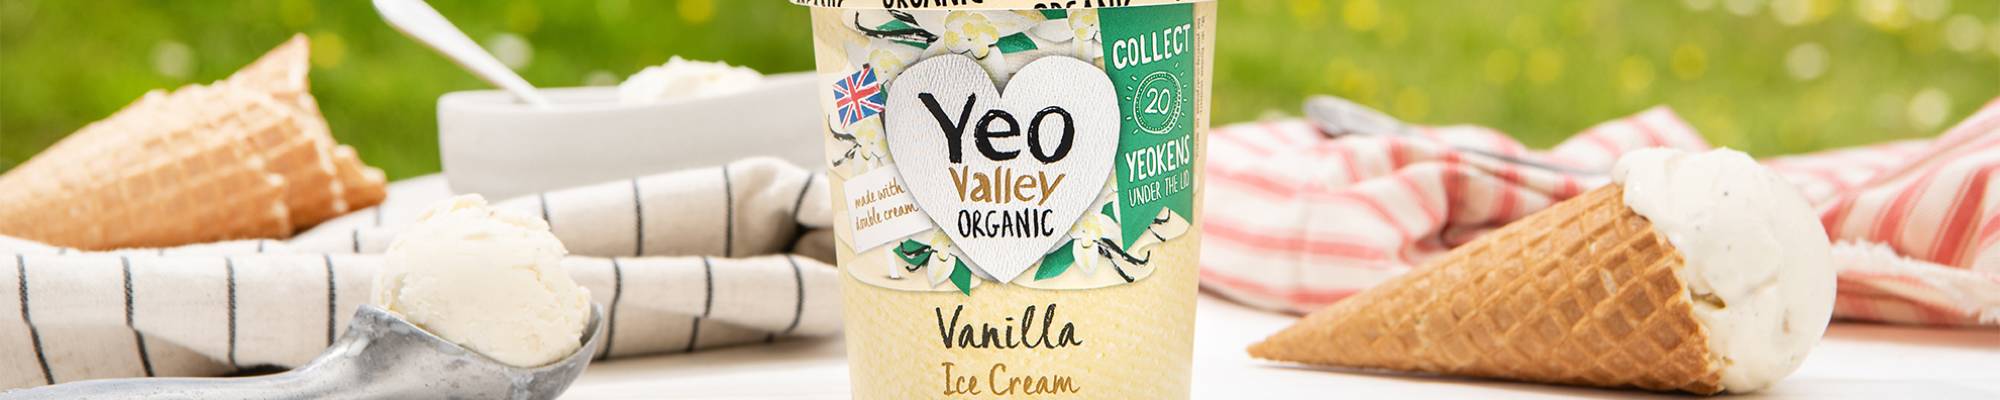 Yeo Valley Organic Vanilla Icecream